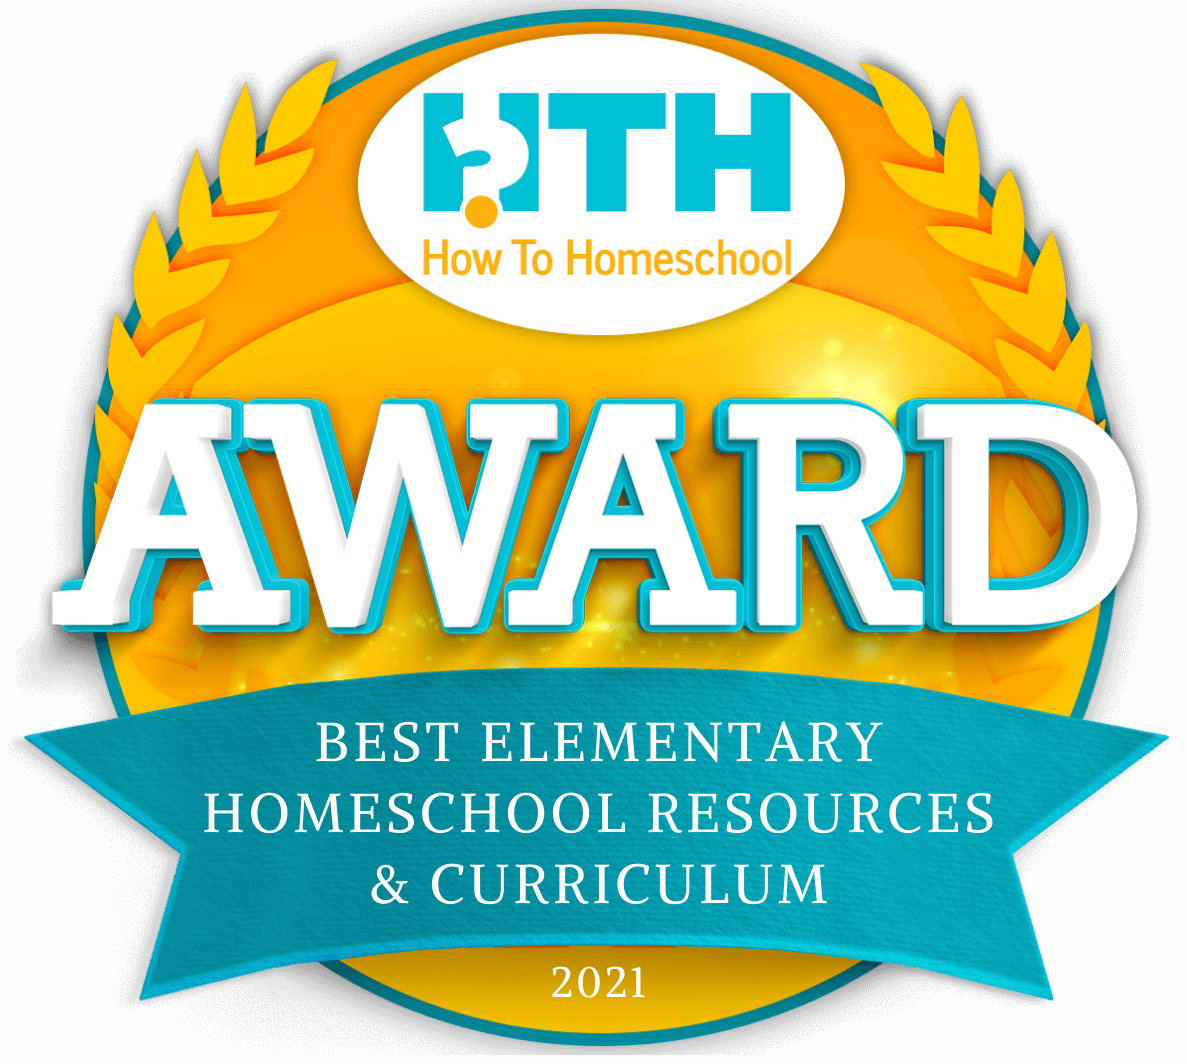 Best Elementary Homeschool Curriculum & Resources award